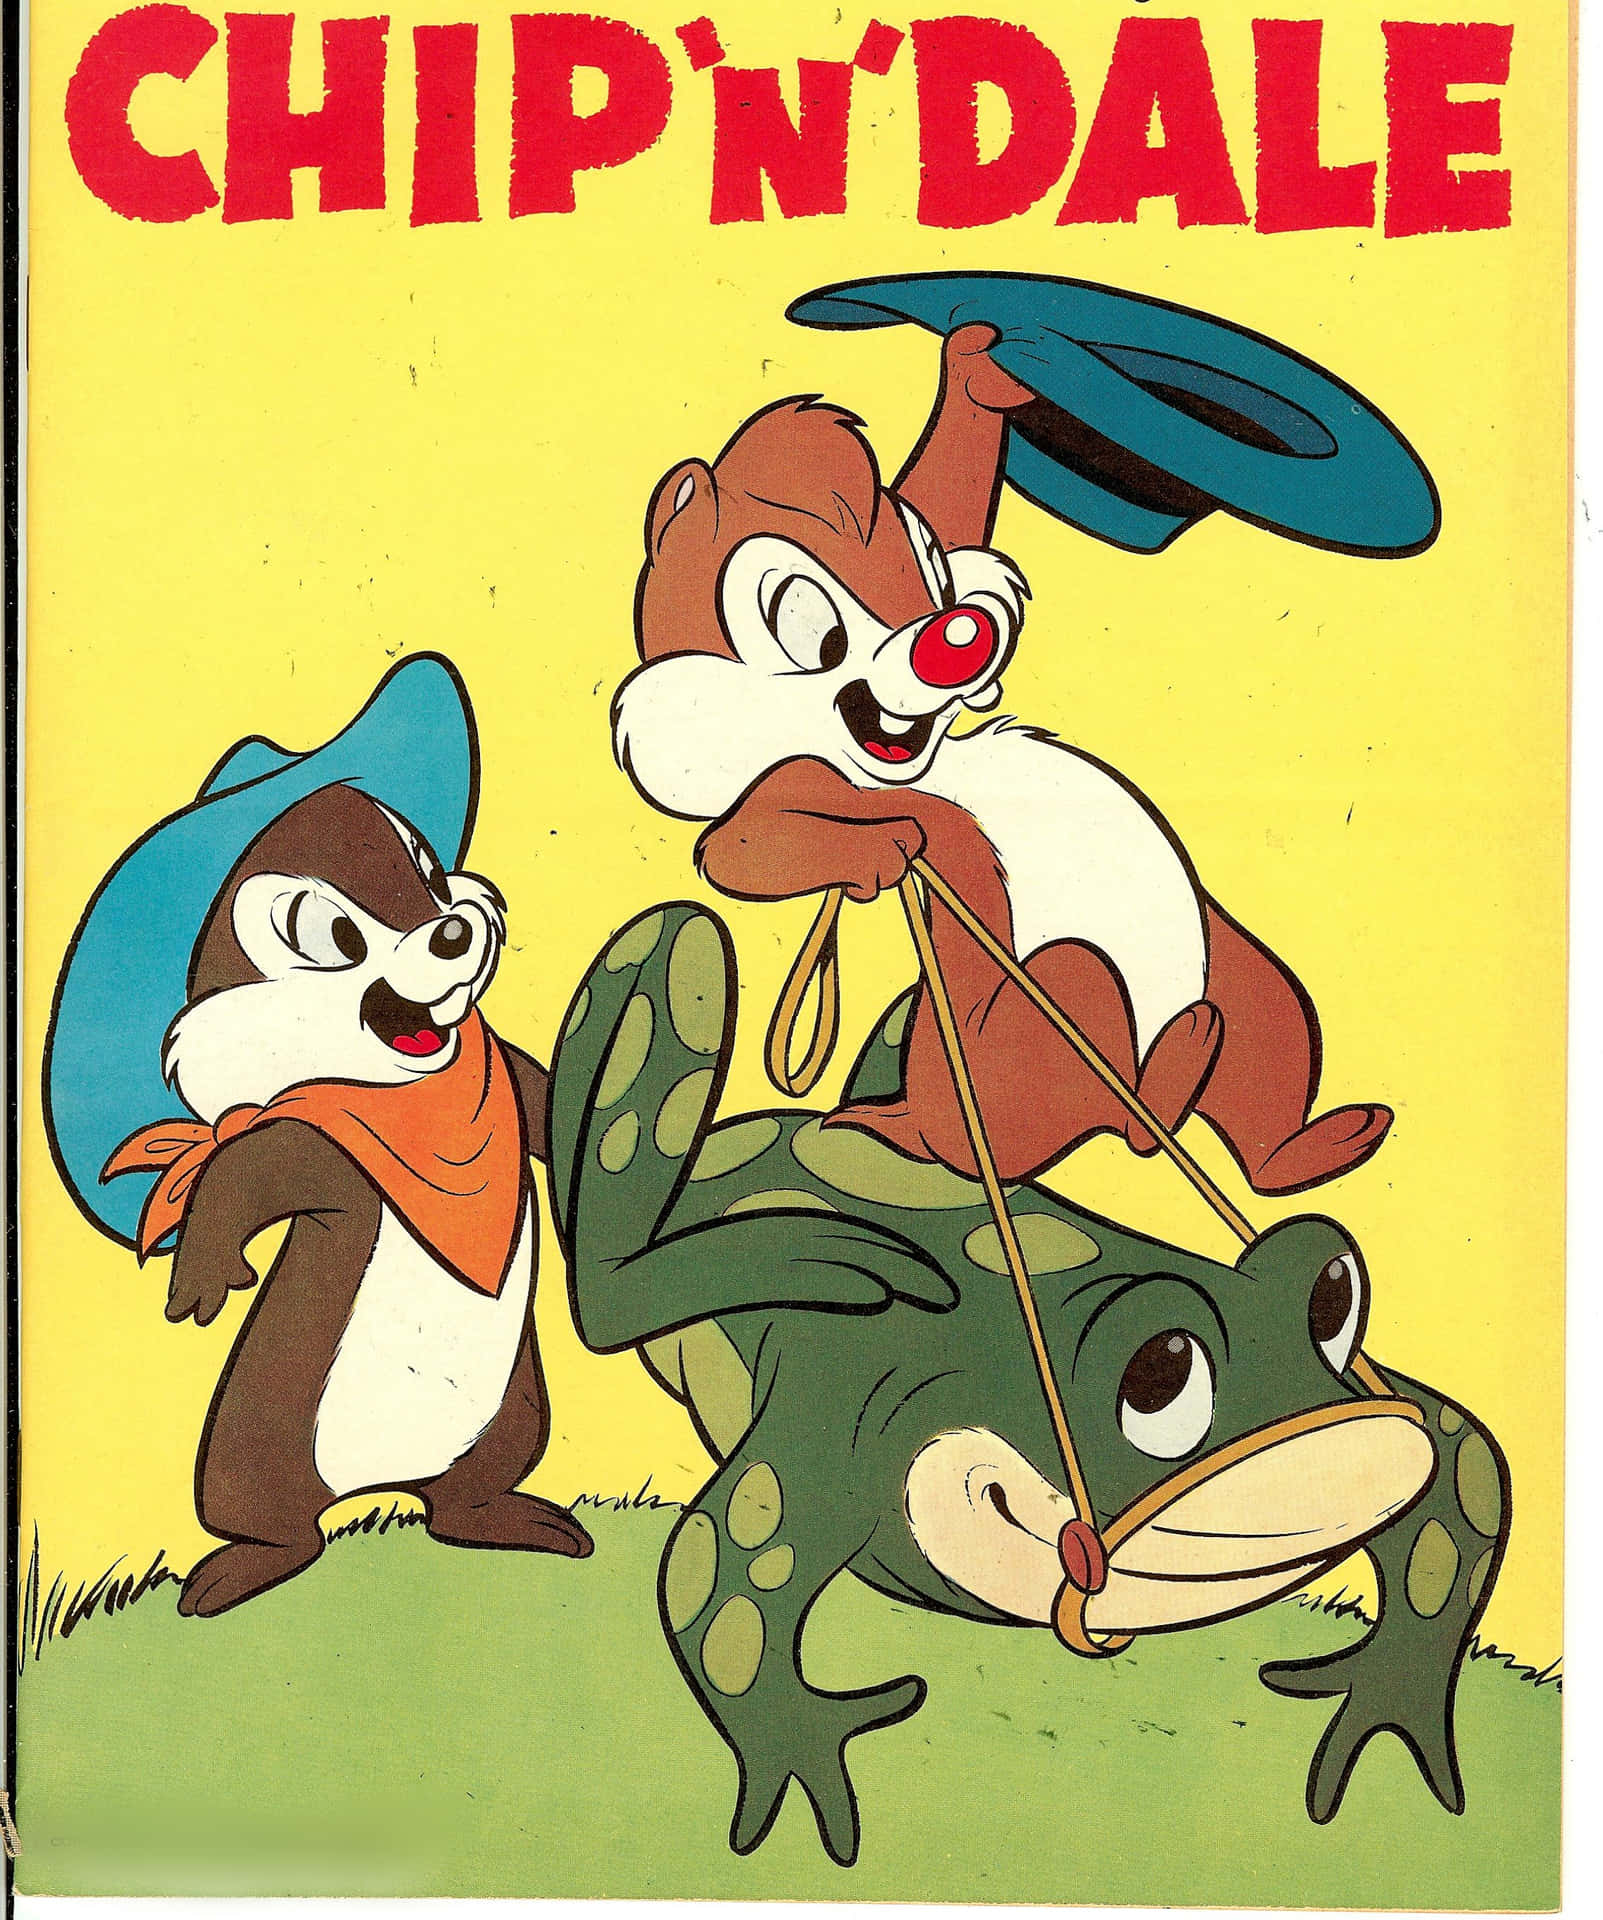 Chipoch Dale - Det Älskade Tecknade Duo